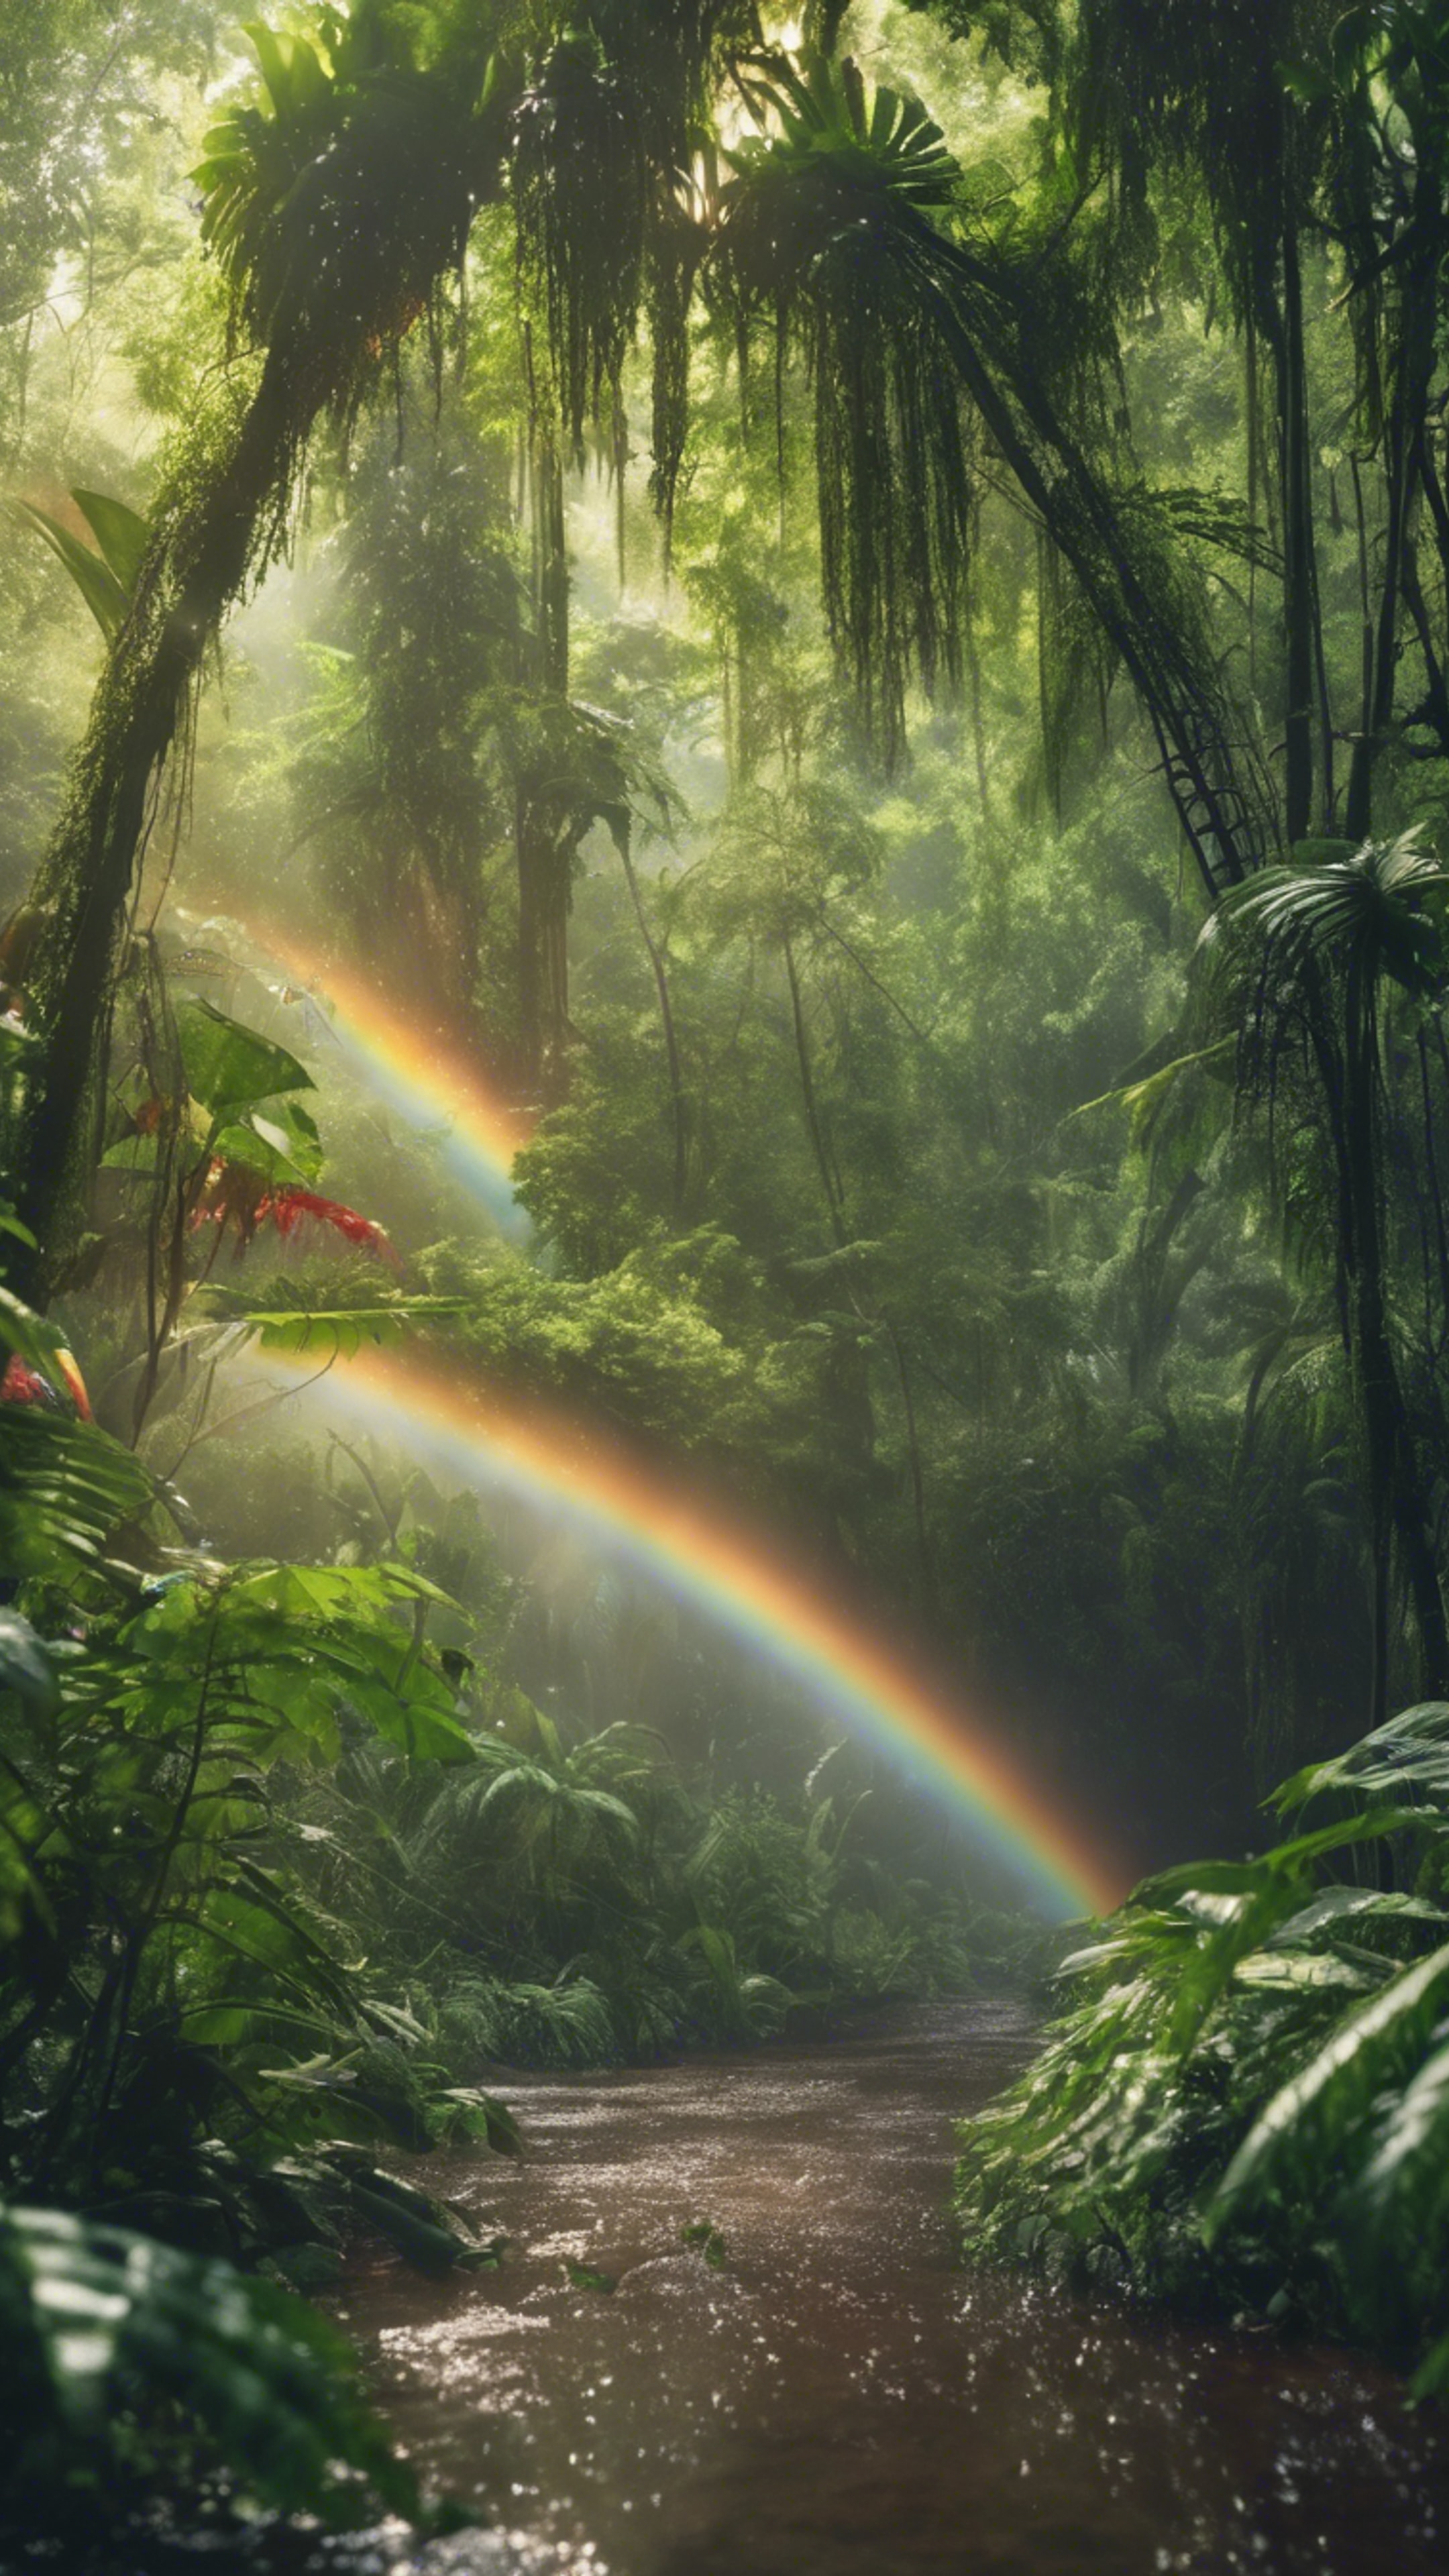 A lush, green rainforest glistening under a rainbow after a summer shower. Tapet[0e0a5e65f97649b38163]